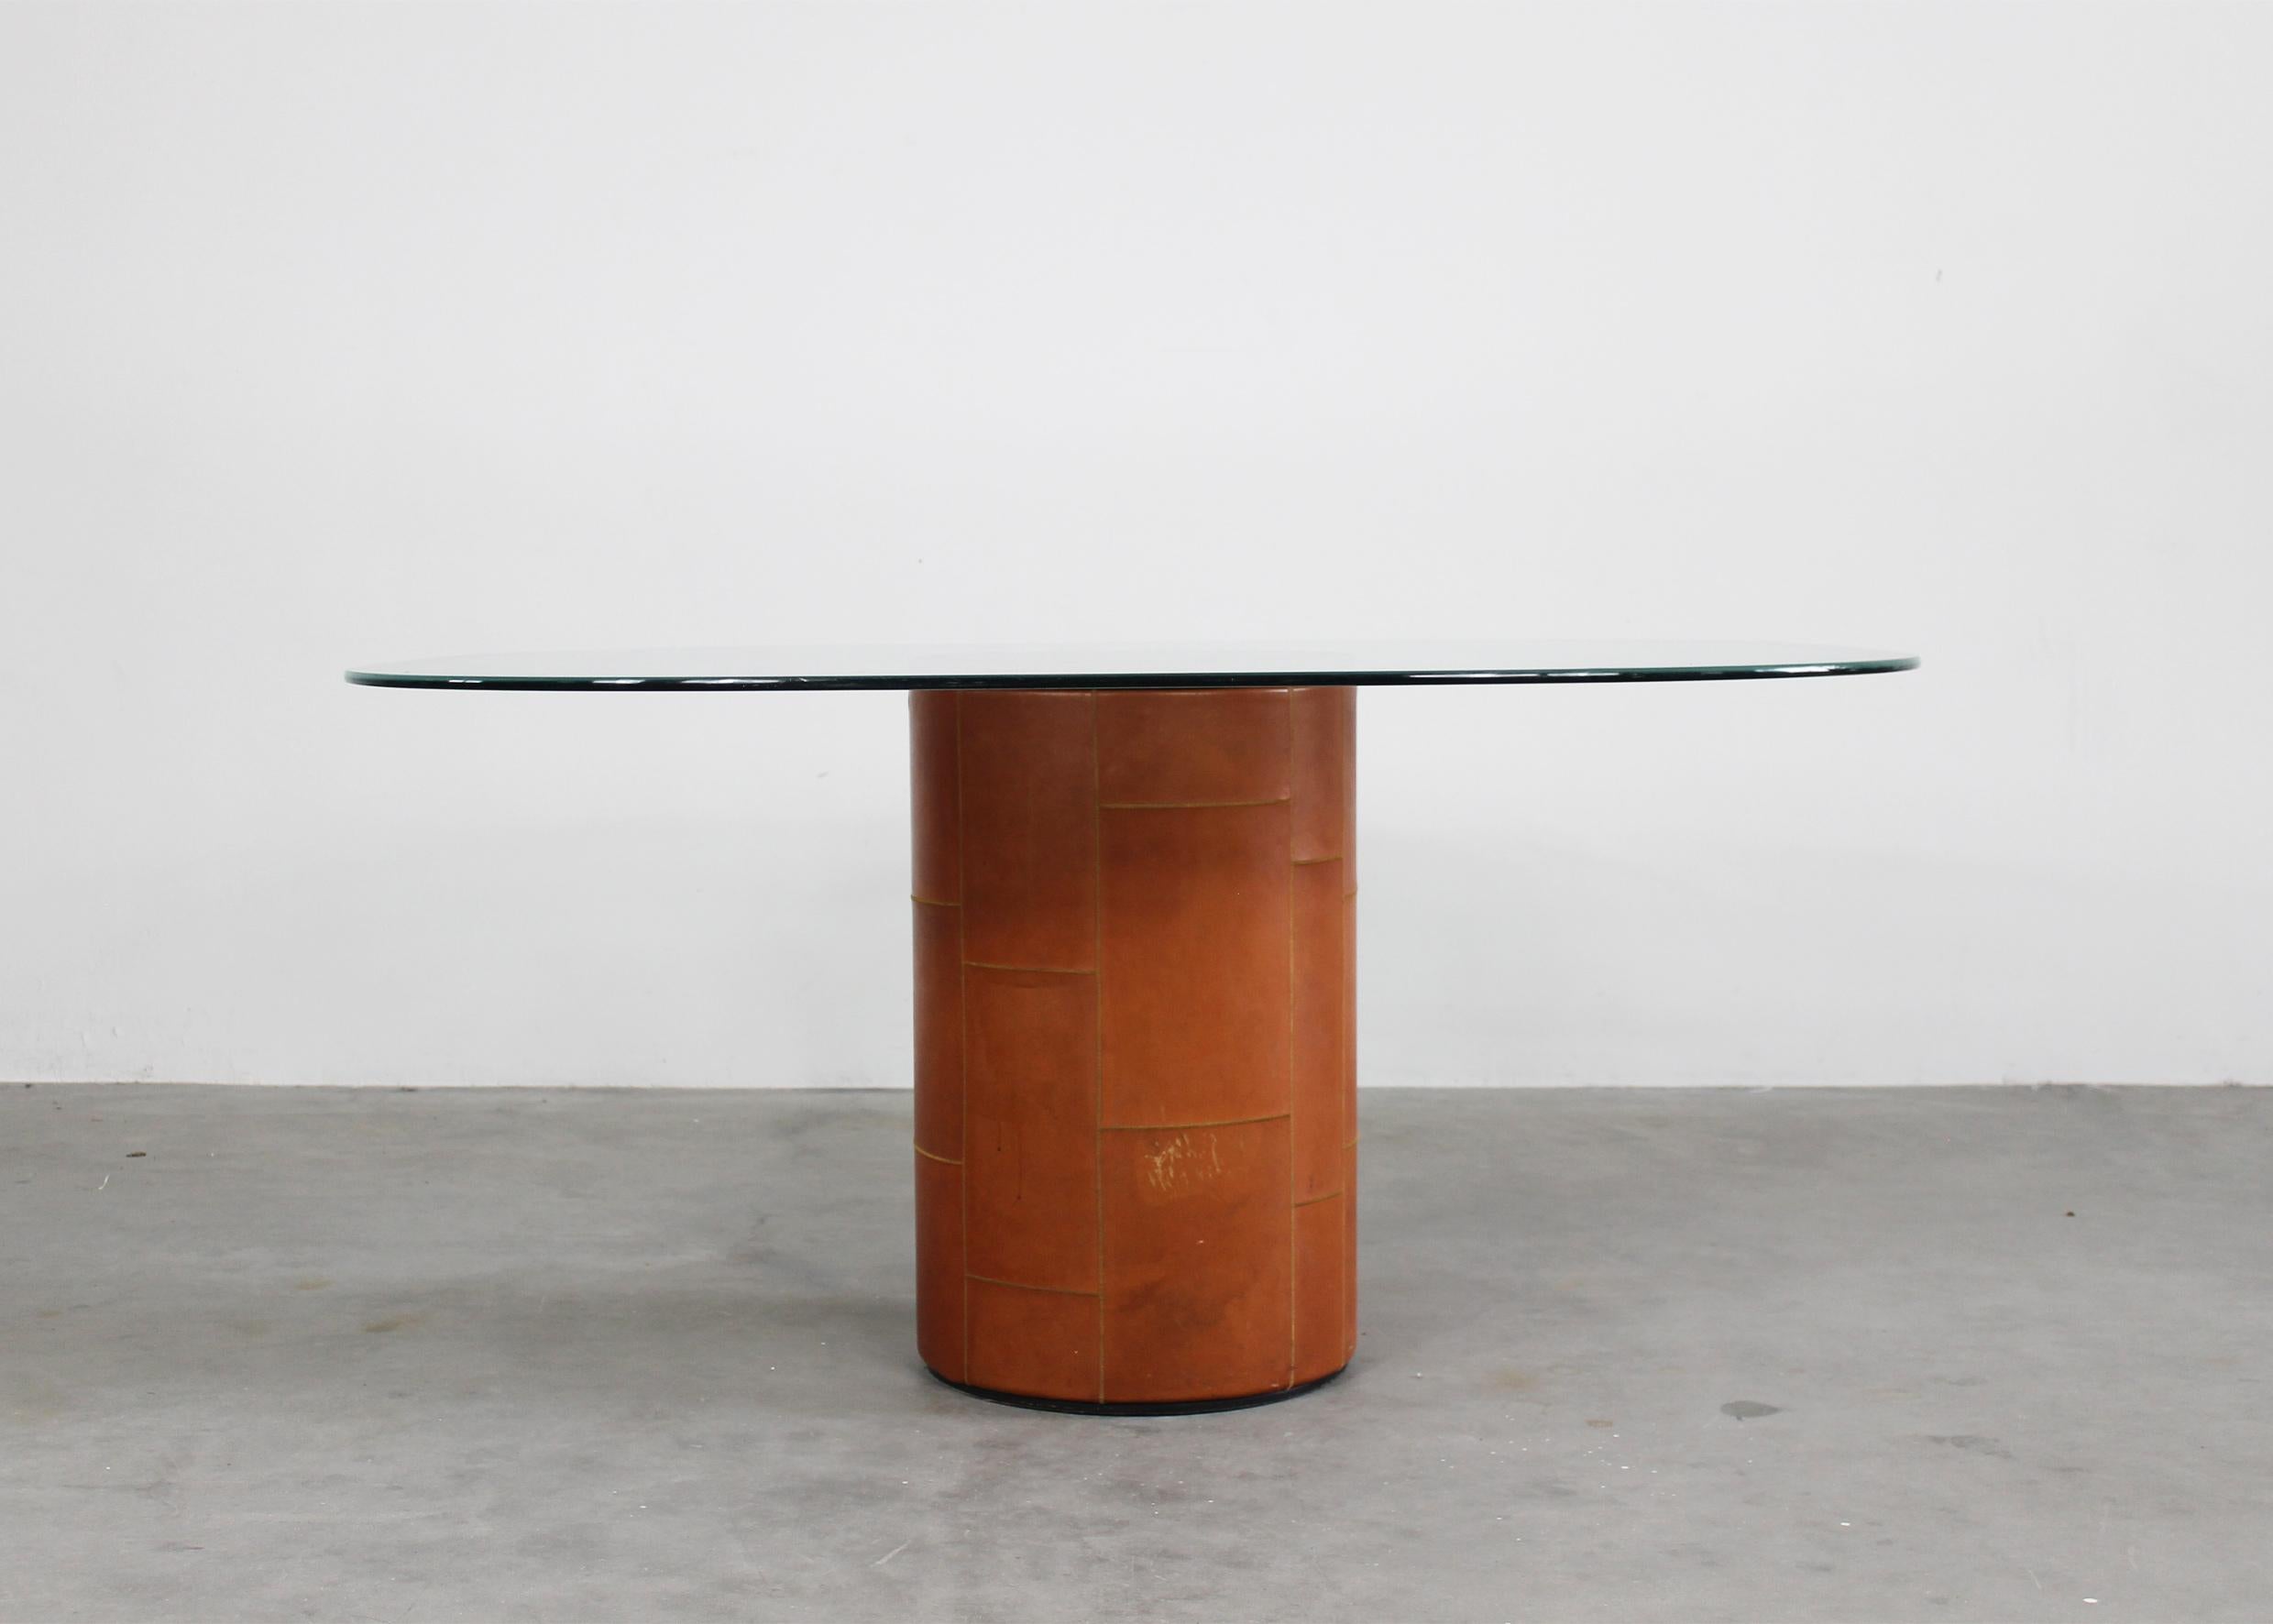 Tisch Tobio mit Untergestell aus Holz mit Lederbezug und Tischplatte aus geschliffenem Kristall mit dekorativem sandgestrahltem Rahmen. 
Entworfen von Tobia und Afra Scarpa und hergestellt von B&B in den 1970er Jahren 

Tobia Scarpa und seine Frau